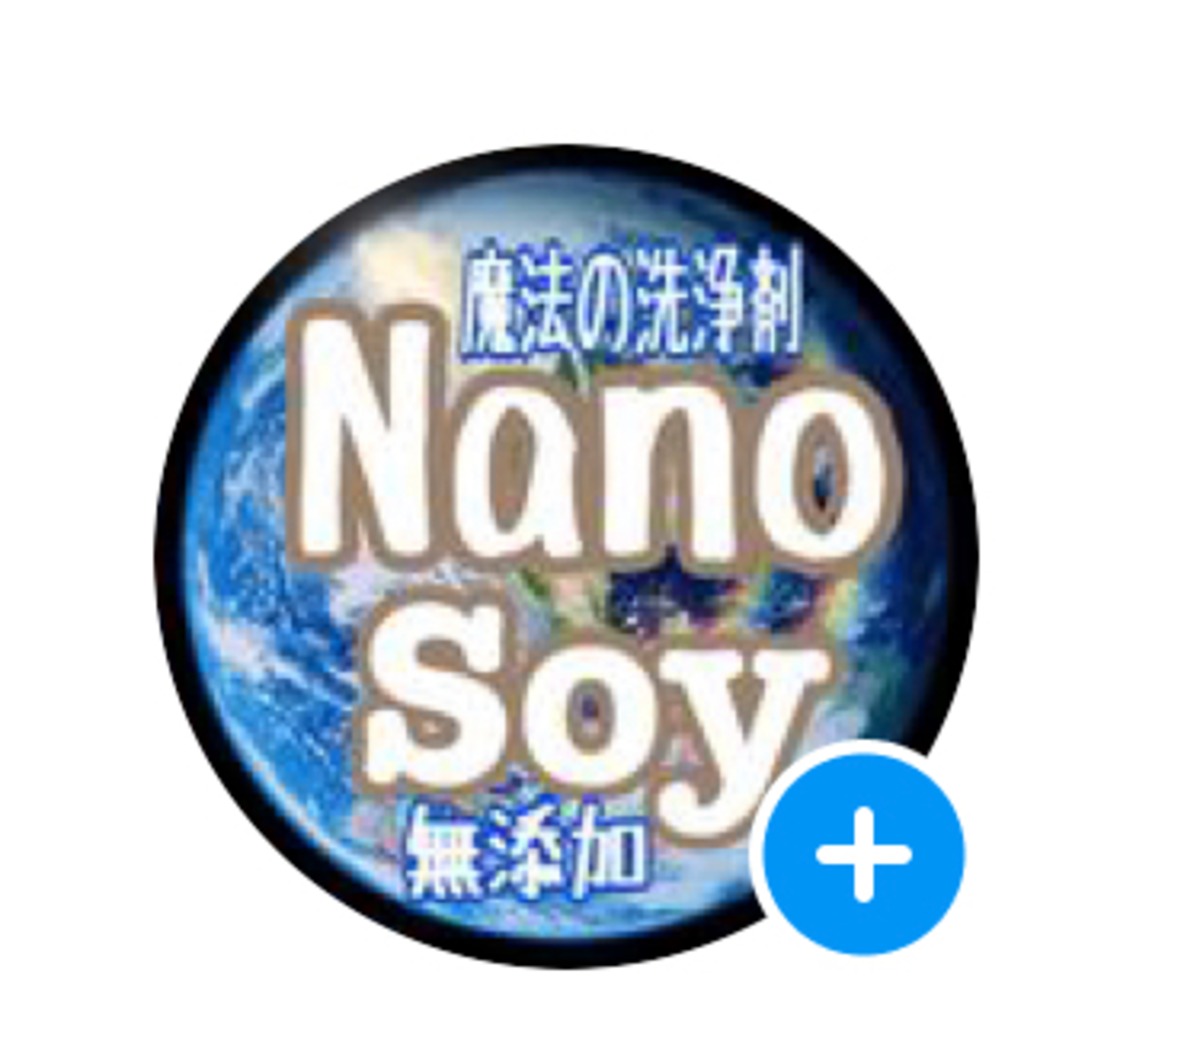 Nanosoy Shop